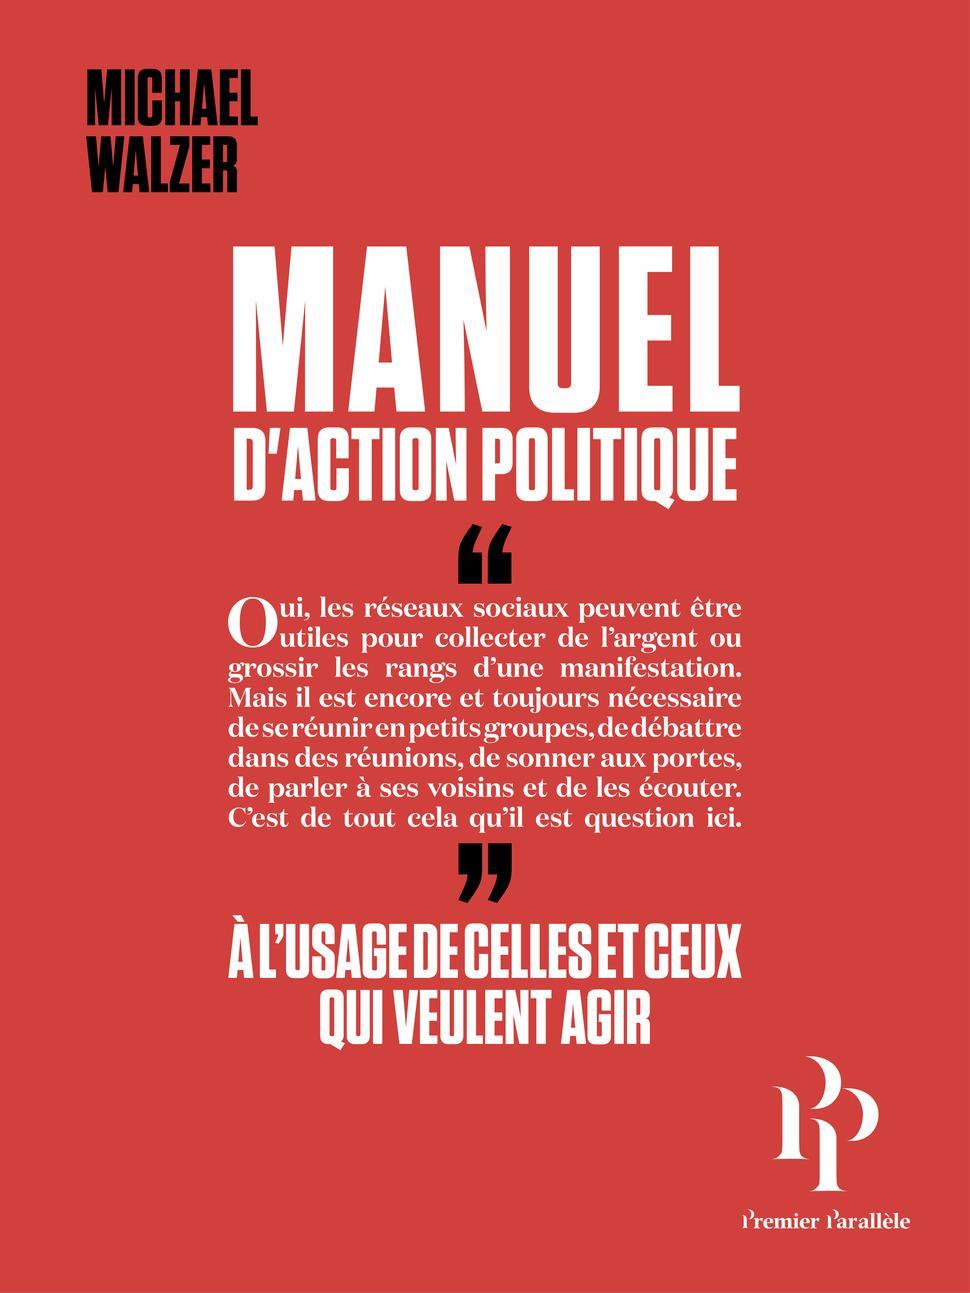 Manuel d'action politique (Paperback, French language, 2019, Premier Parallèle)